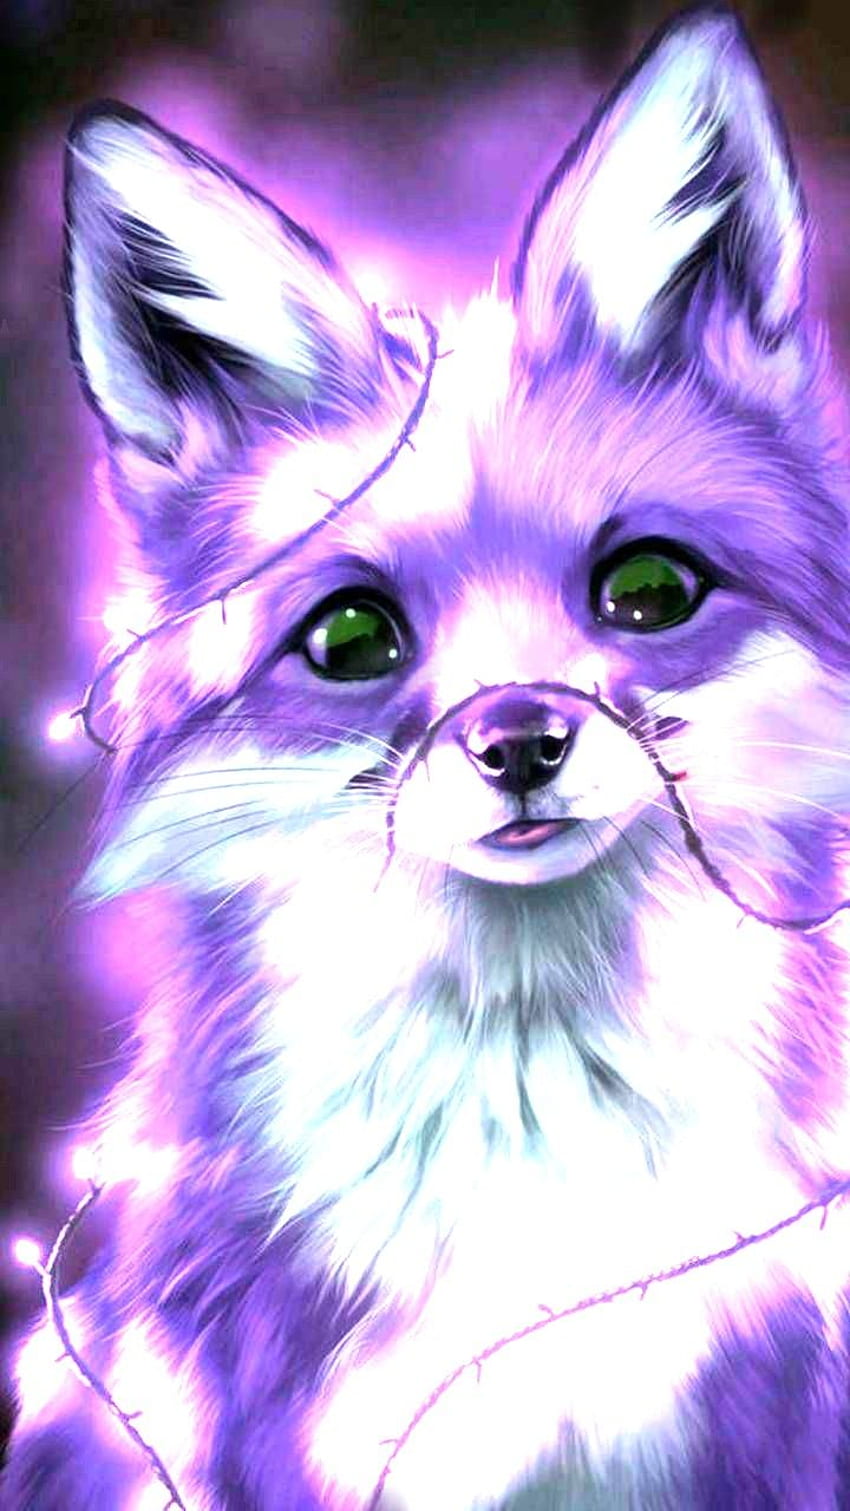 HD wallpaper Animal Ears anime Fox Girl  Wallpaper Flare